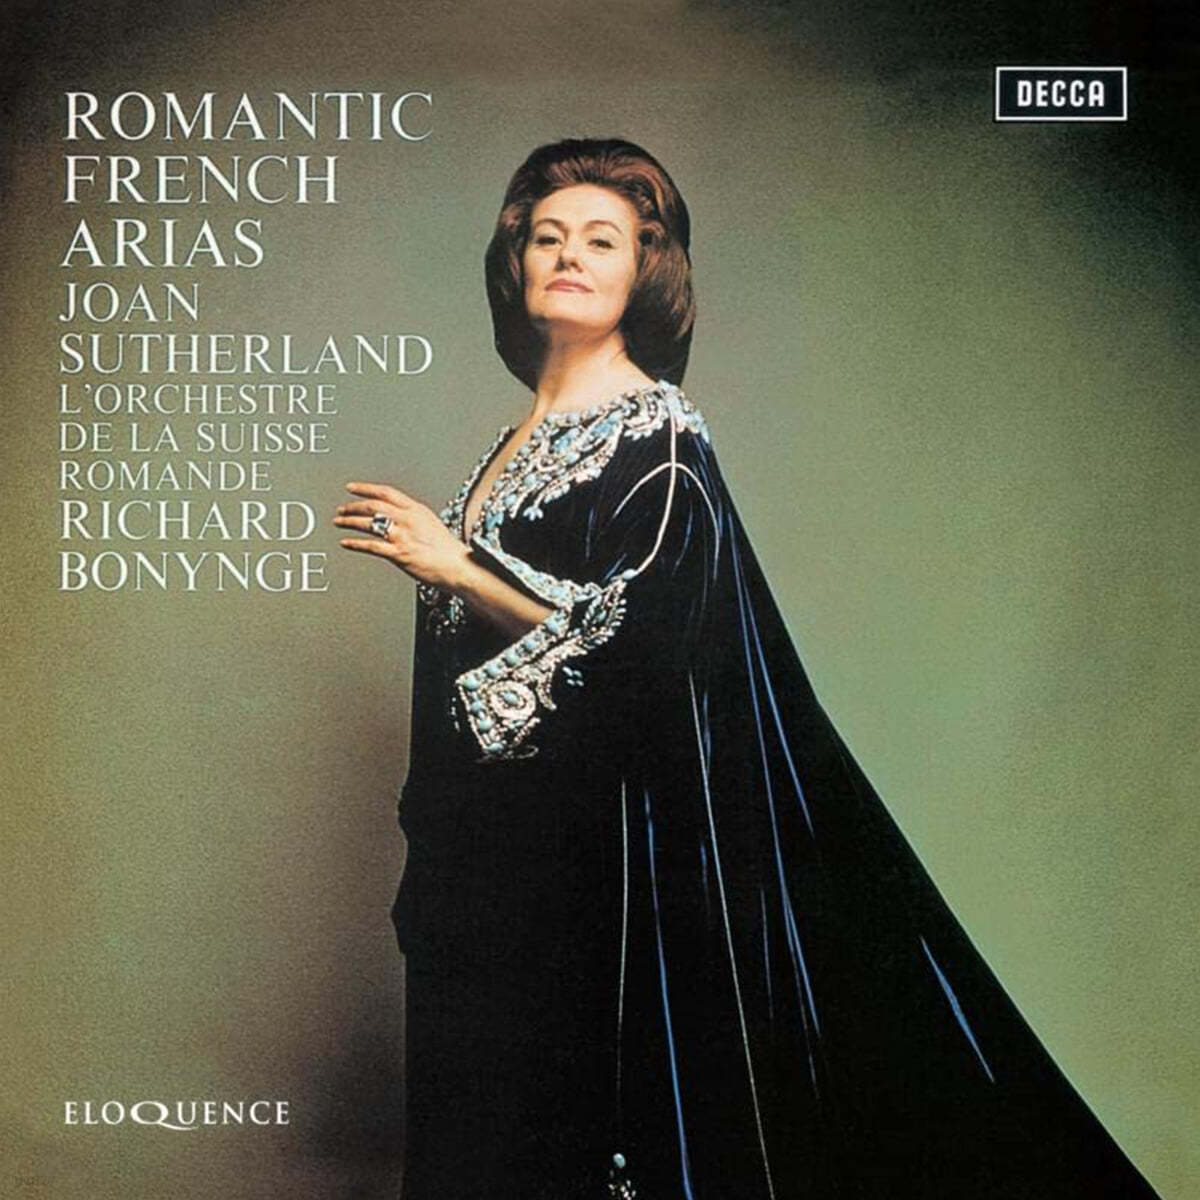 Joan Sutherland 낭만주의 프랑스 오페라 아리아 (Romantic French Arias)